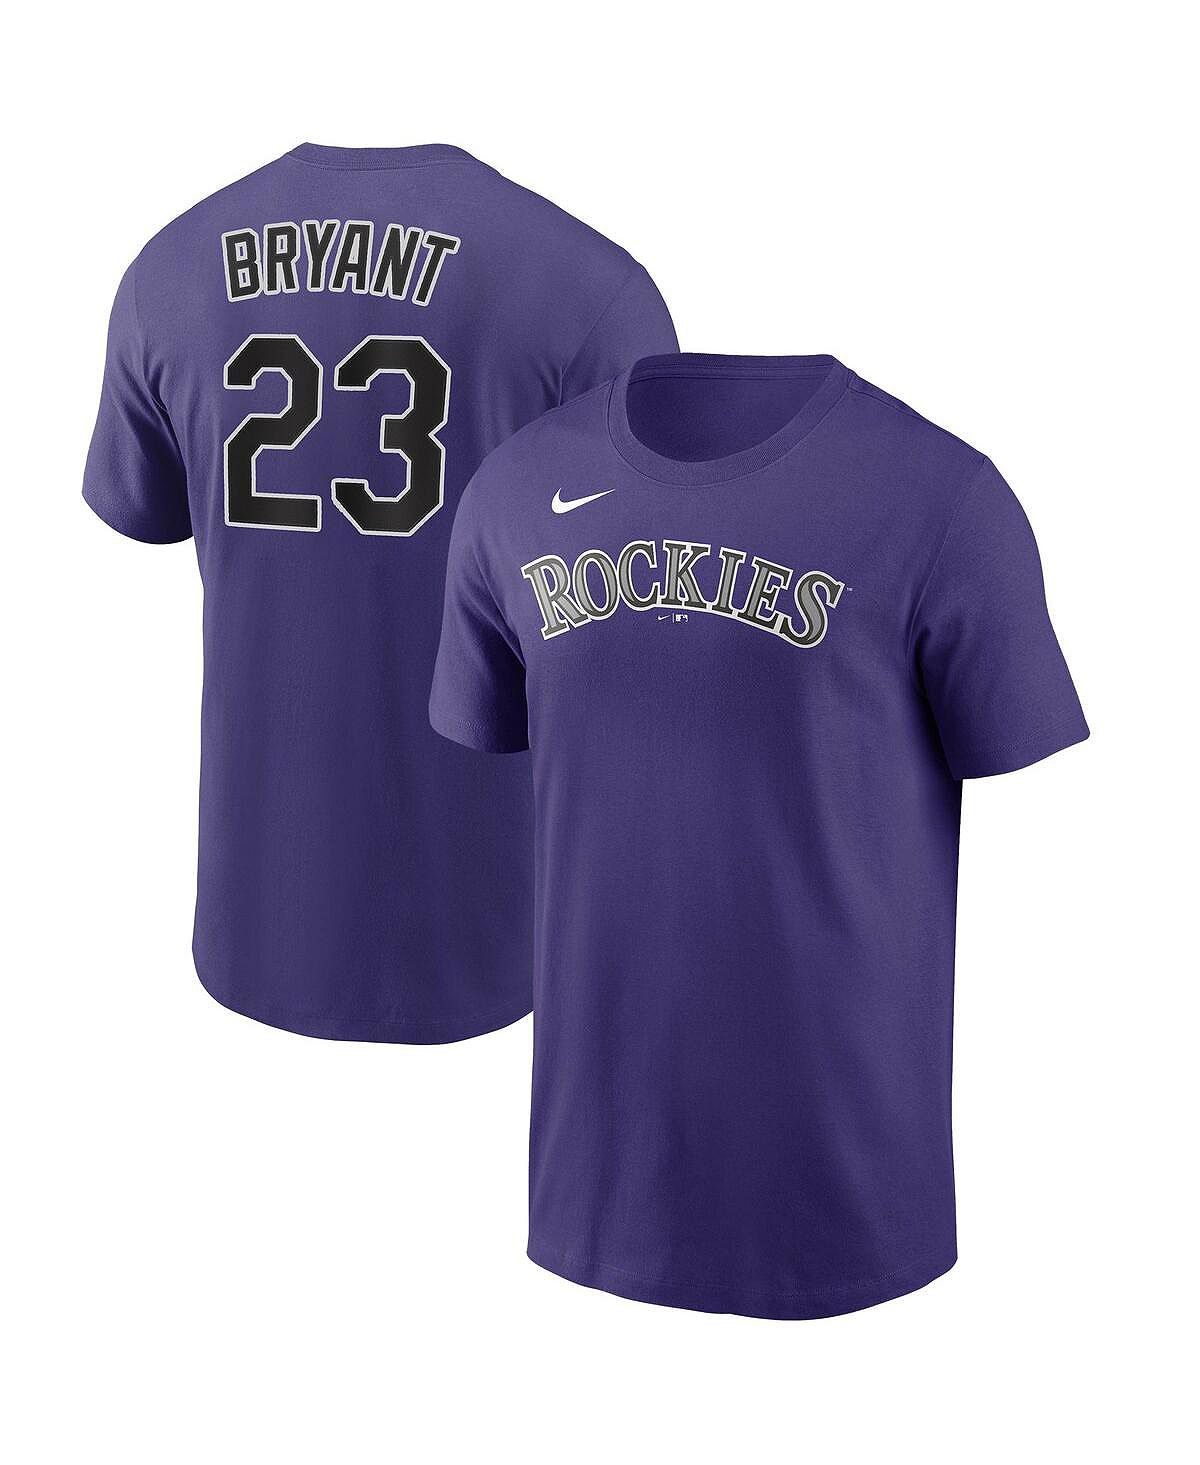 Мужская футболка kris bryant purple colorado rockies с именем и номером игрока Nike, фиолетовый в горах графика